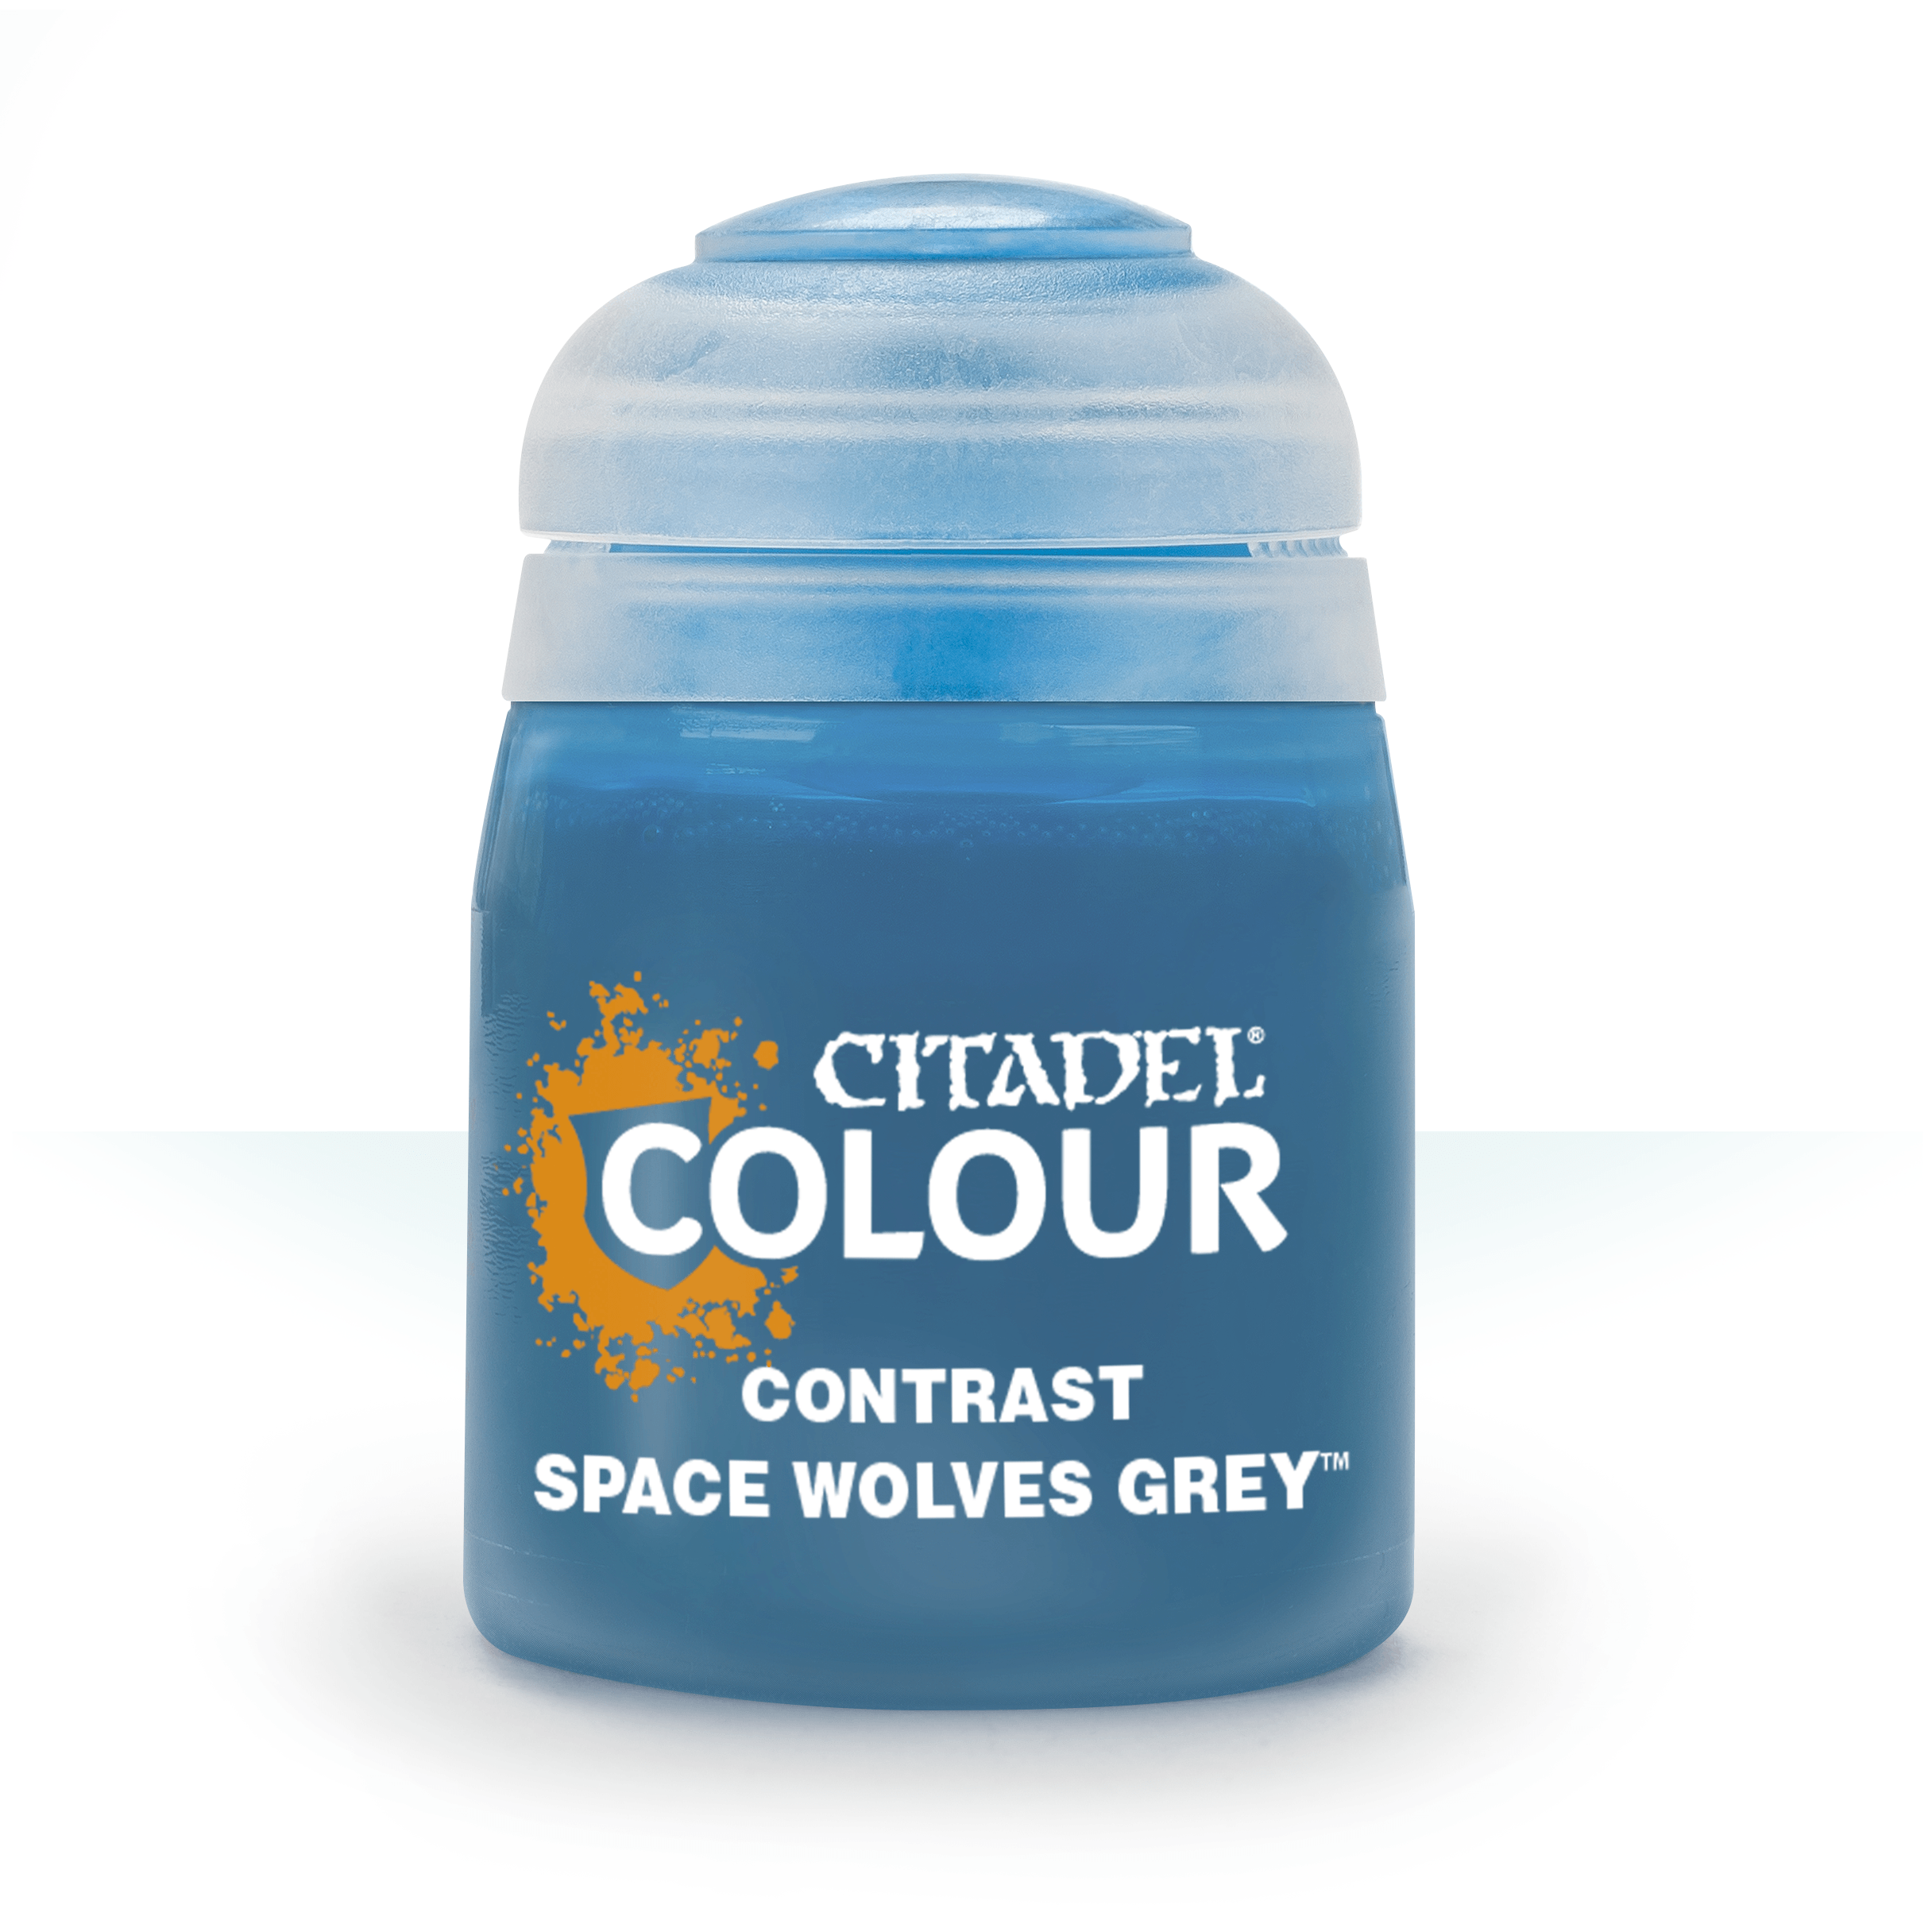 space wolves grey paint pot